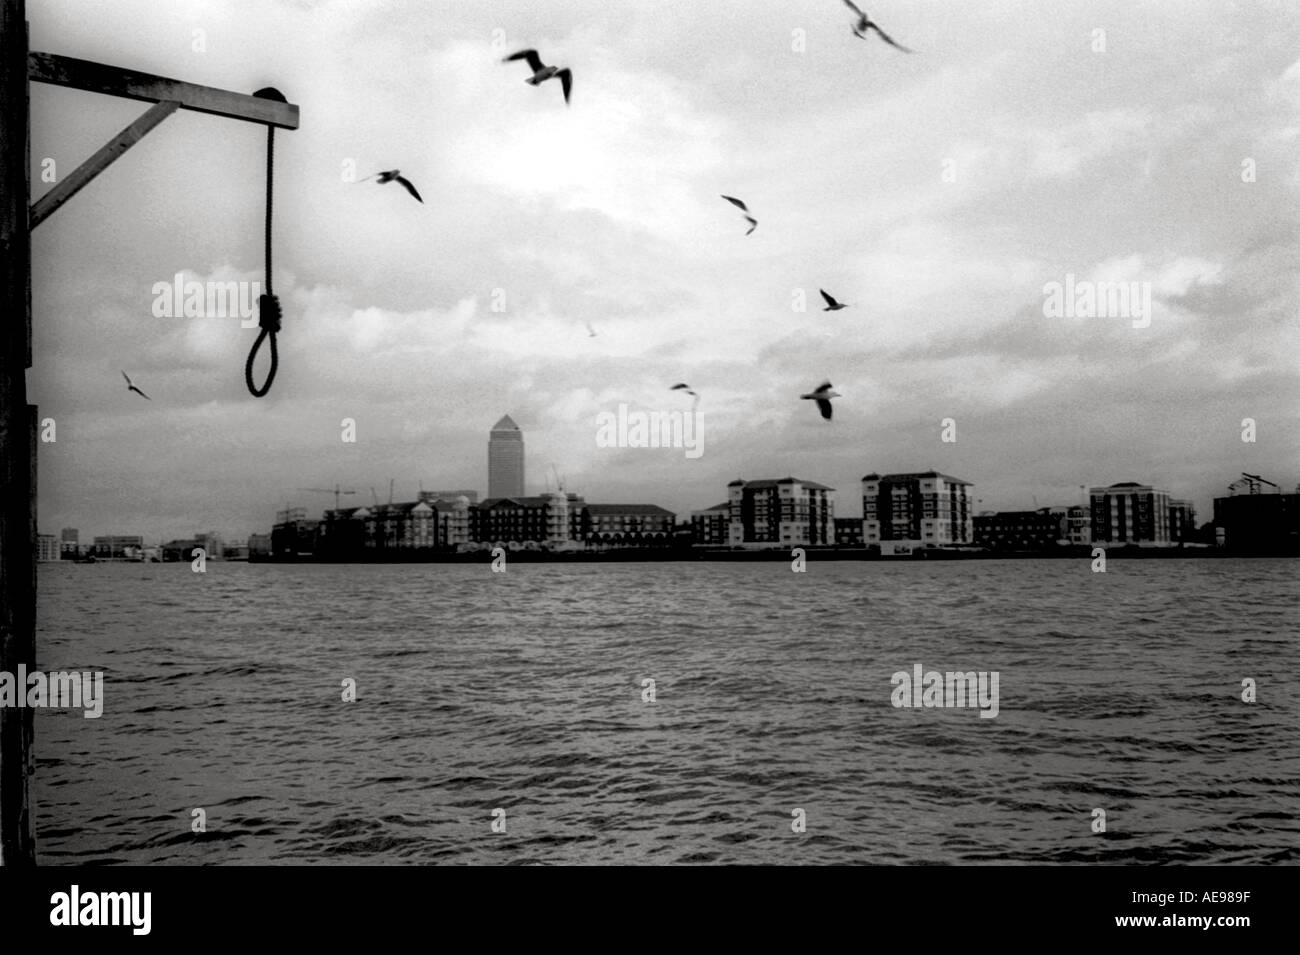 Corde suspendue au-dessus de la Tamise, Londres, Angleterre, Royaume-Uni Banque D'Images